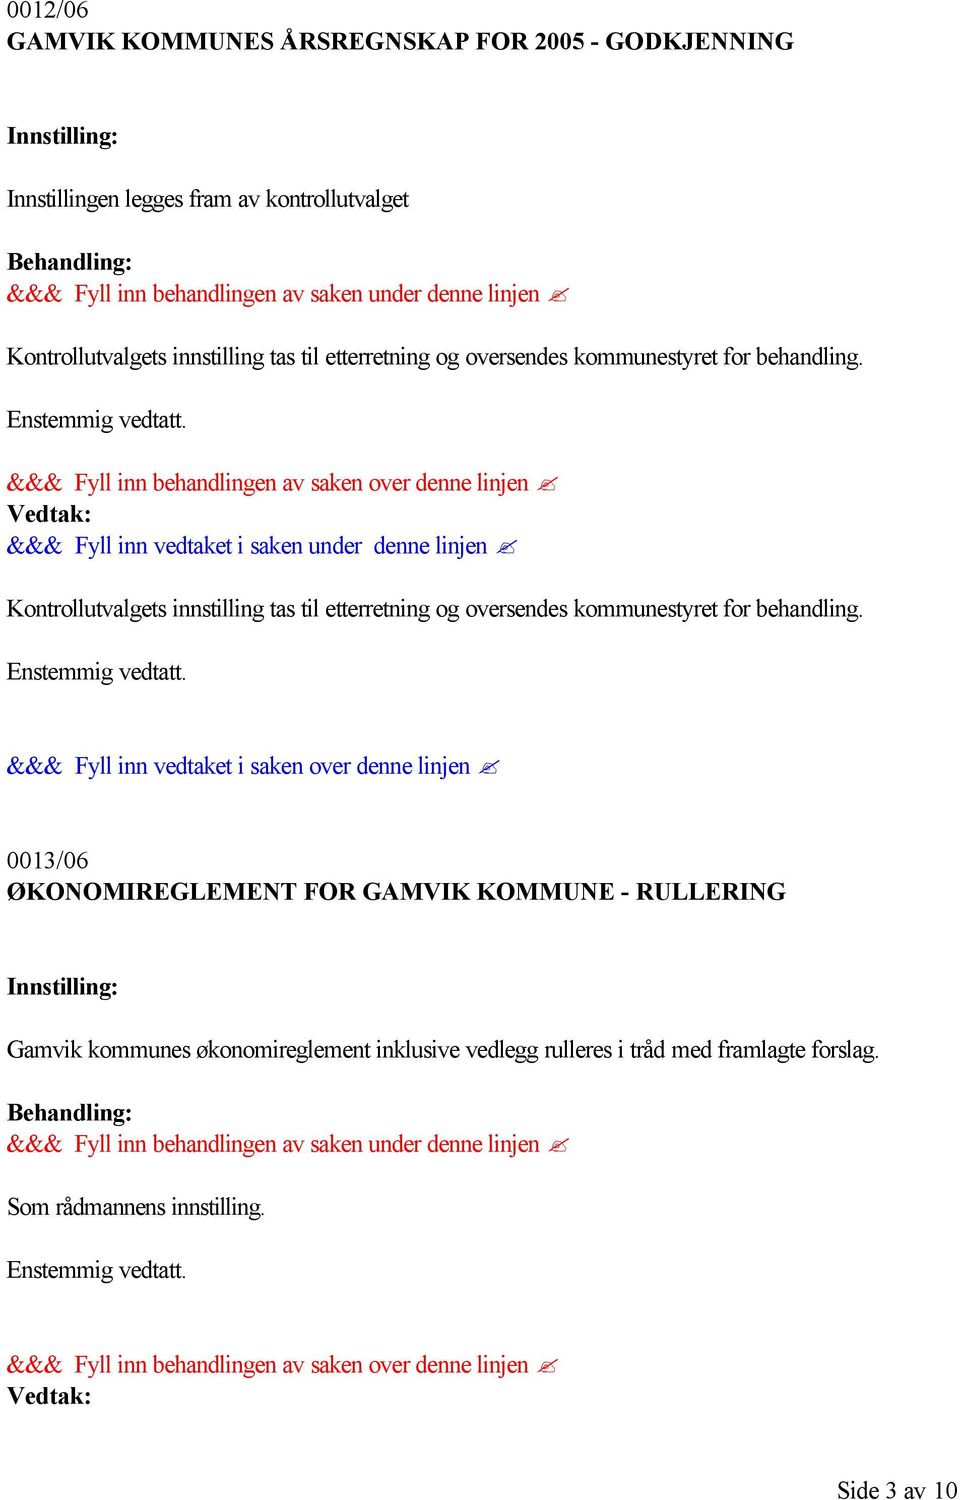 0013/06 ØKONOMIREGLEMENT FOR GAMVIK KOMMUNE - RULLERING Gamvik kommunes økonomireglement inklusive vedlegg rulleres i